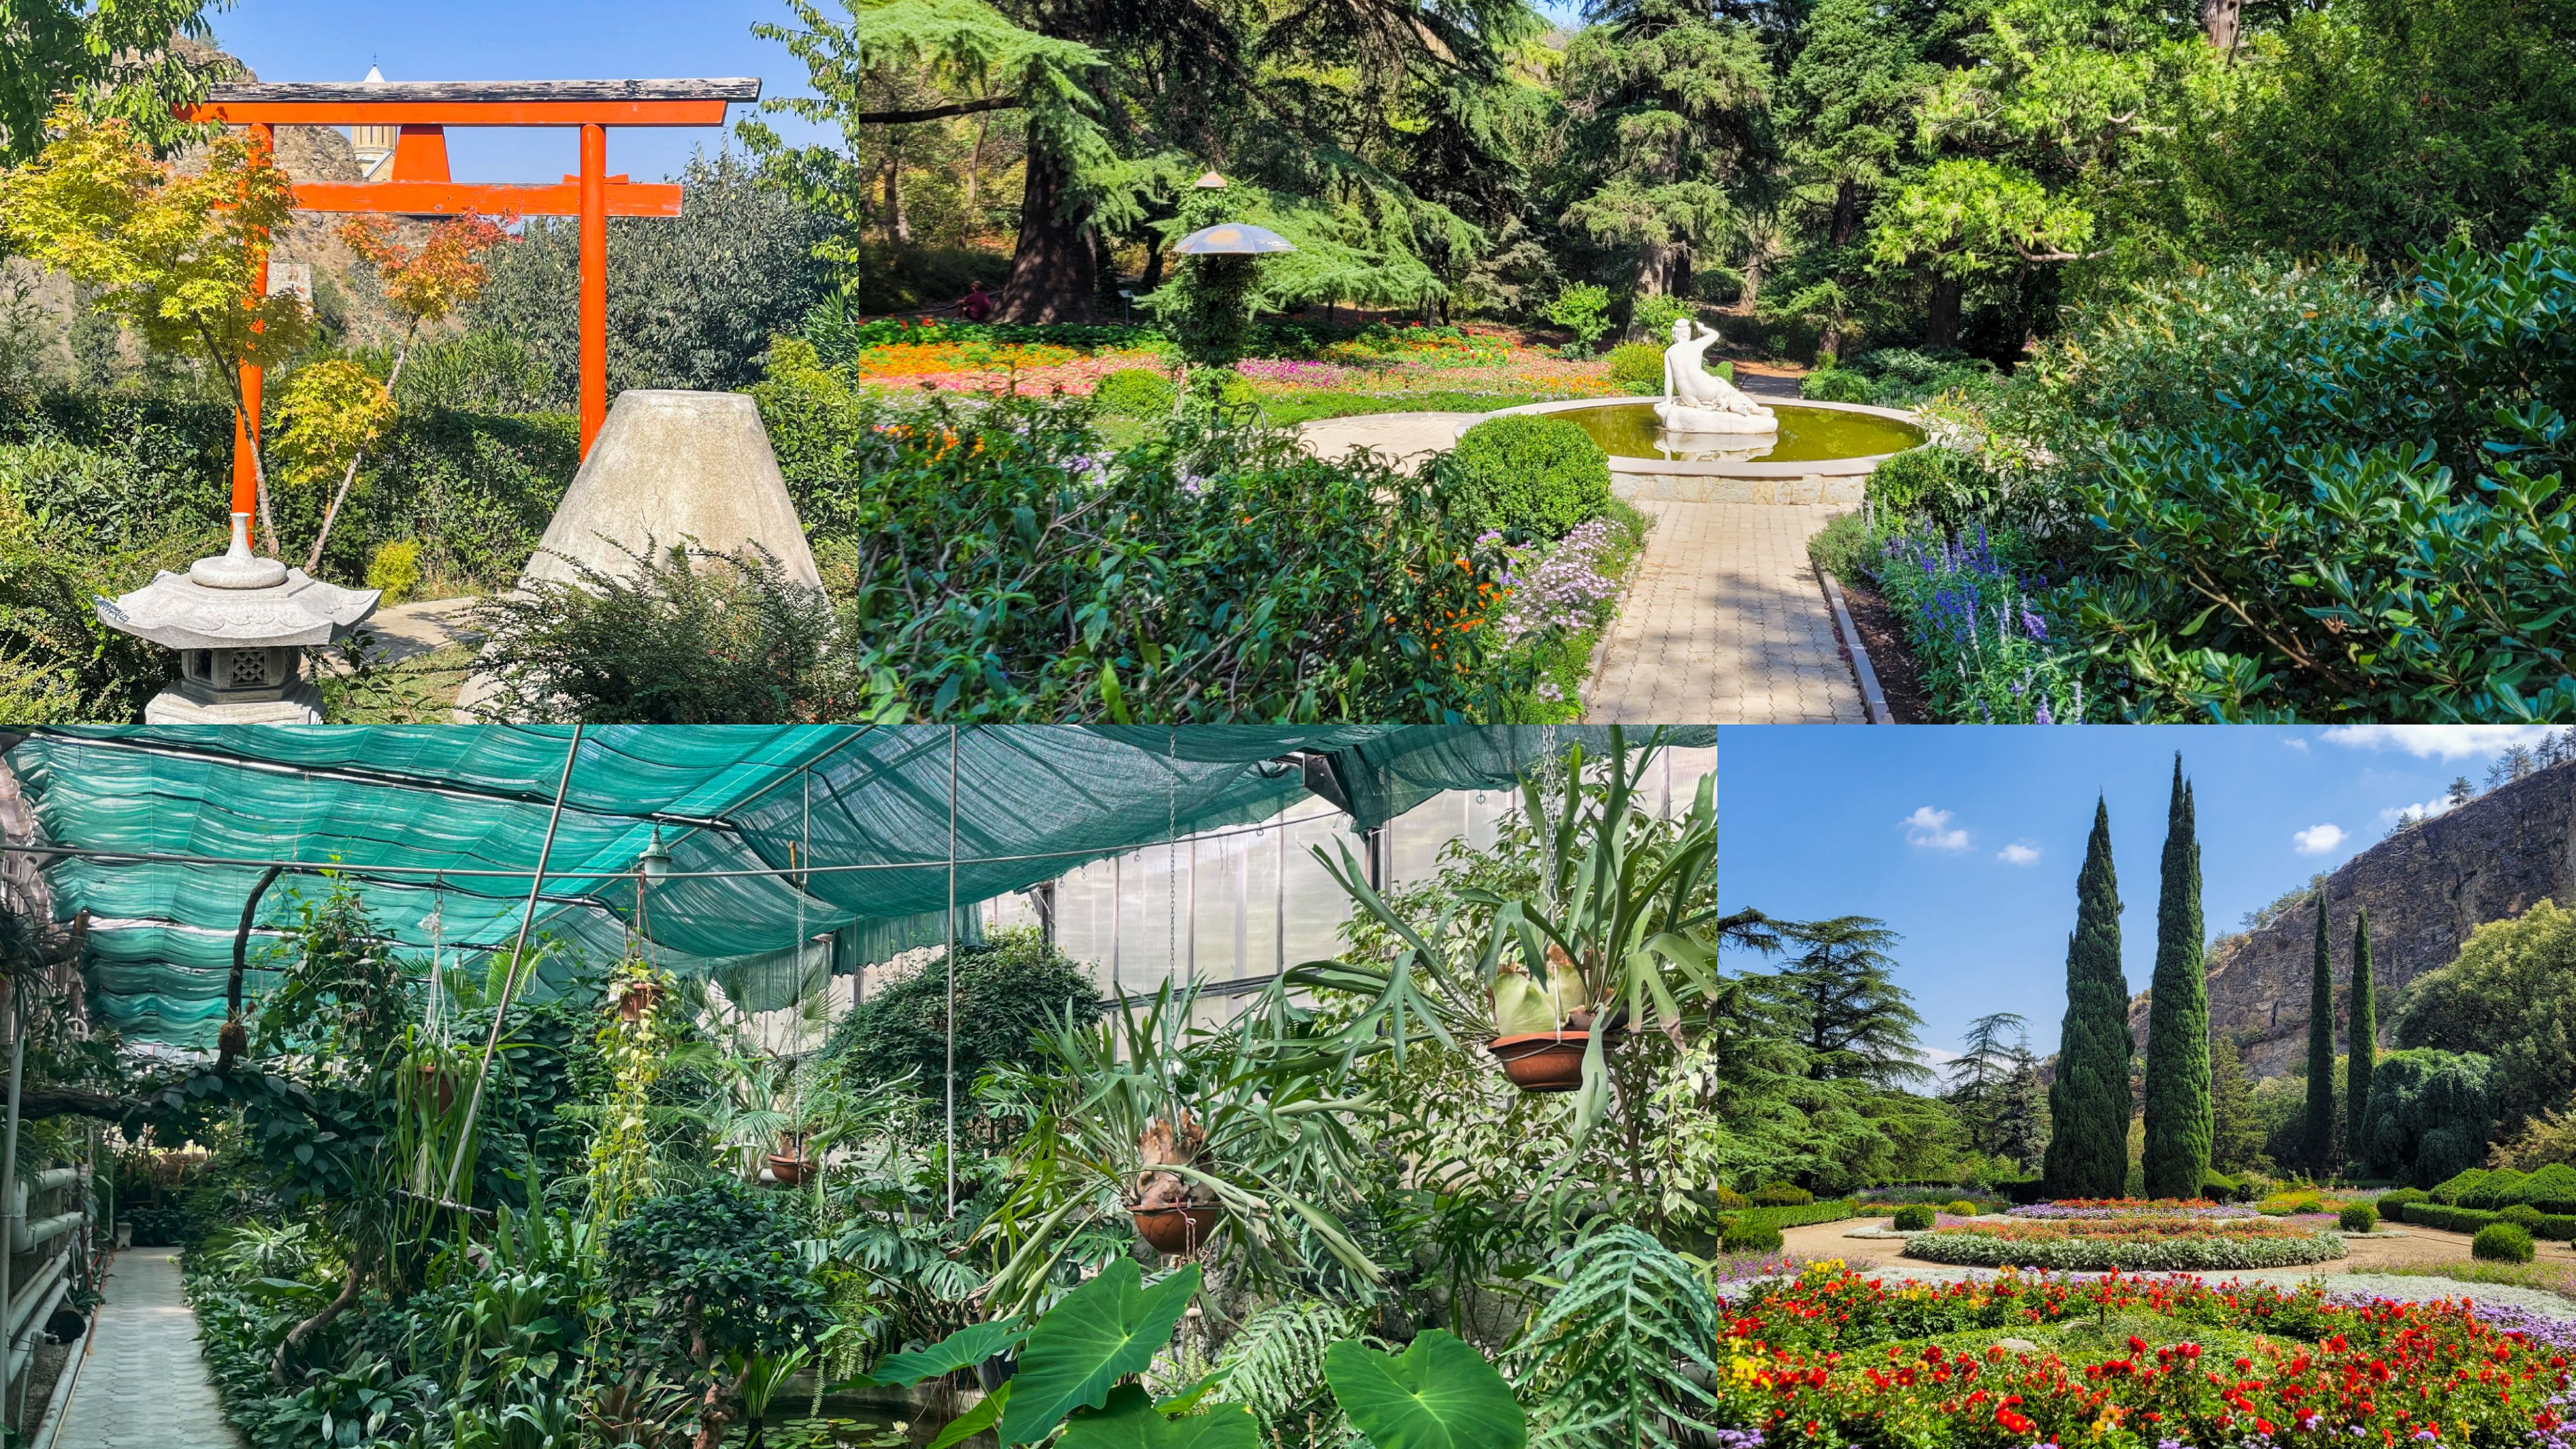 Passage au jardin botanique : Jjardin japonais, français et serre tropicale